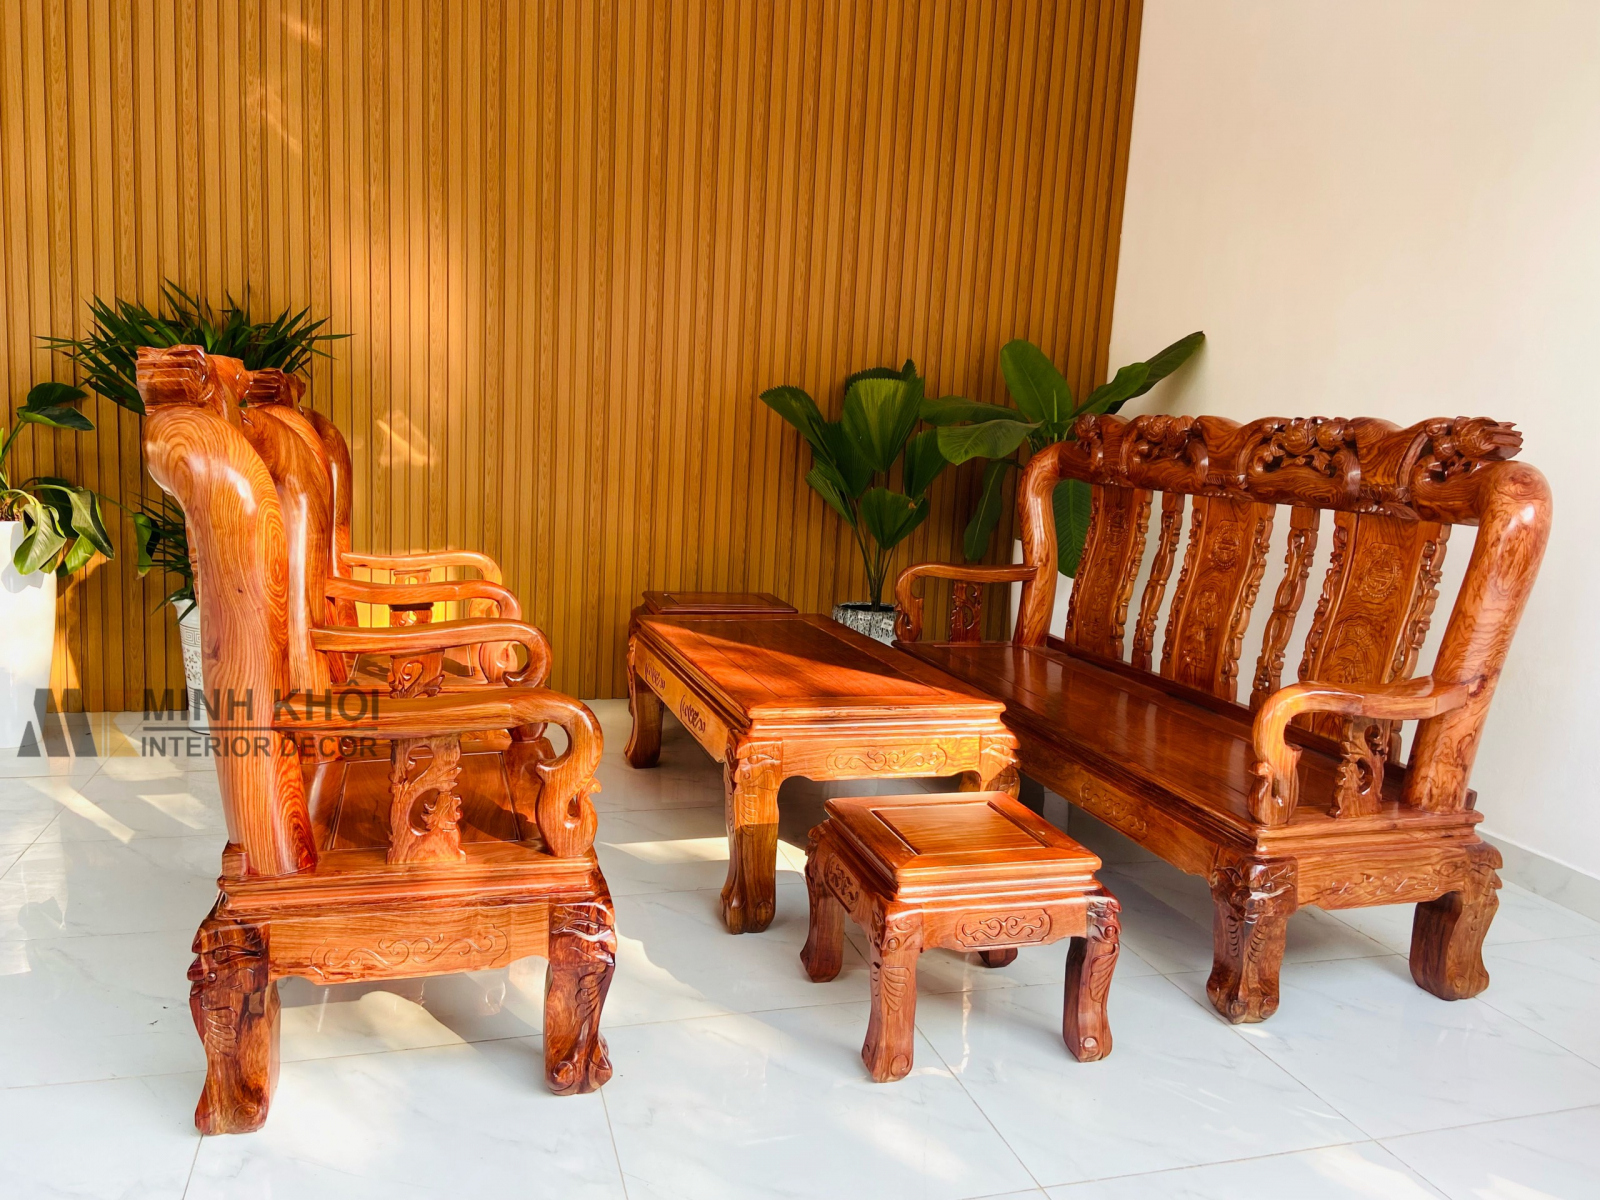 Bạn sẽ không thể không yêu bộ bàn ghế gỗ hương đẹp trong hình ảnh này. Với màu sắc và chất liệu gỗ tốt nhất, bộ bàn ghế sẽ tạo nên một vẻ đẹp tự nhiên và đem đến cho không gian sống của gia đình bạn một hơi thở trong lành và dễ chịu.